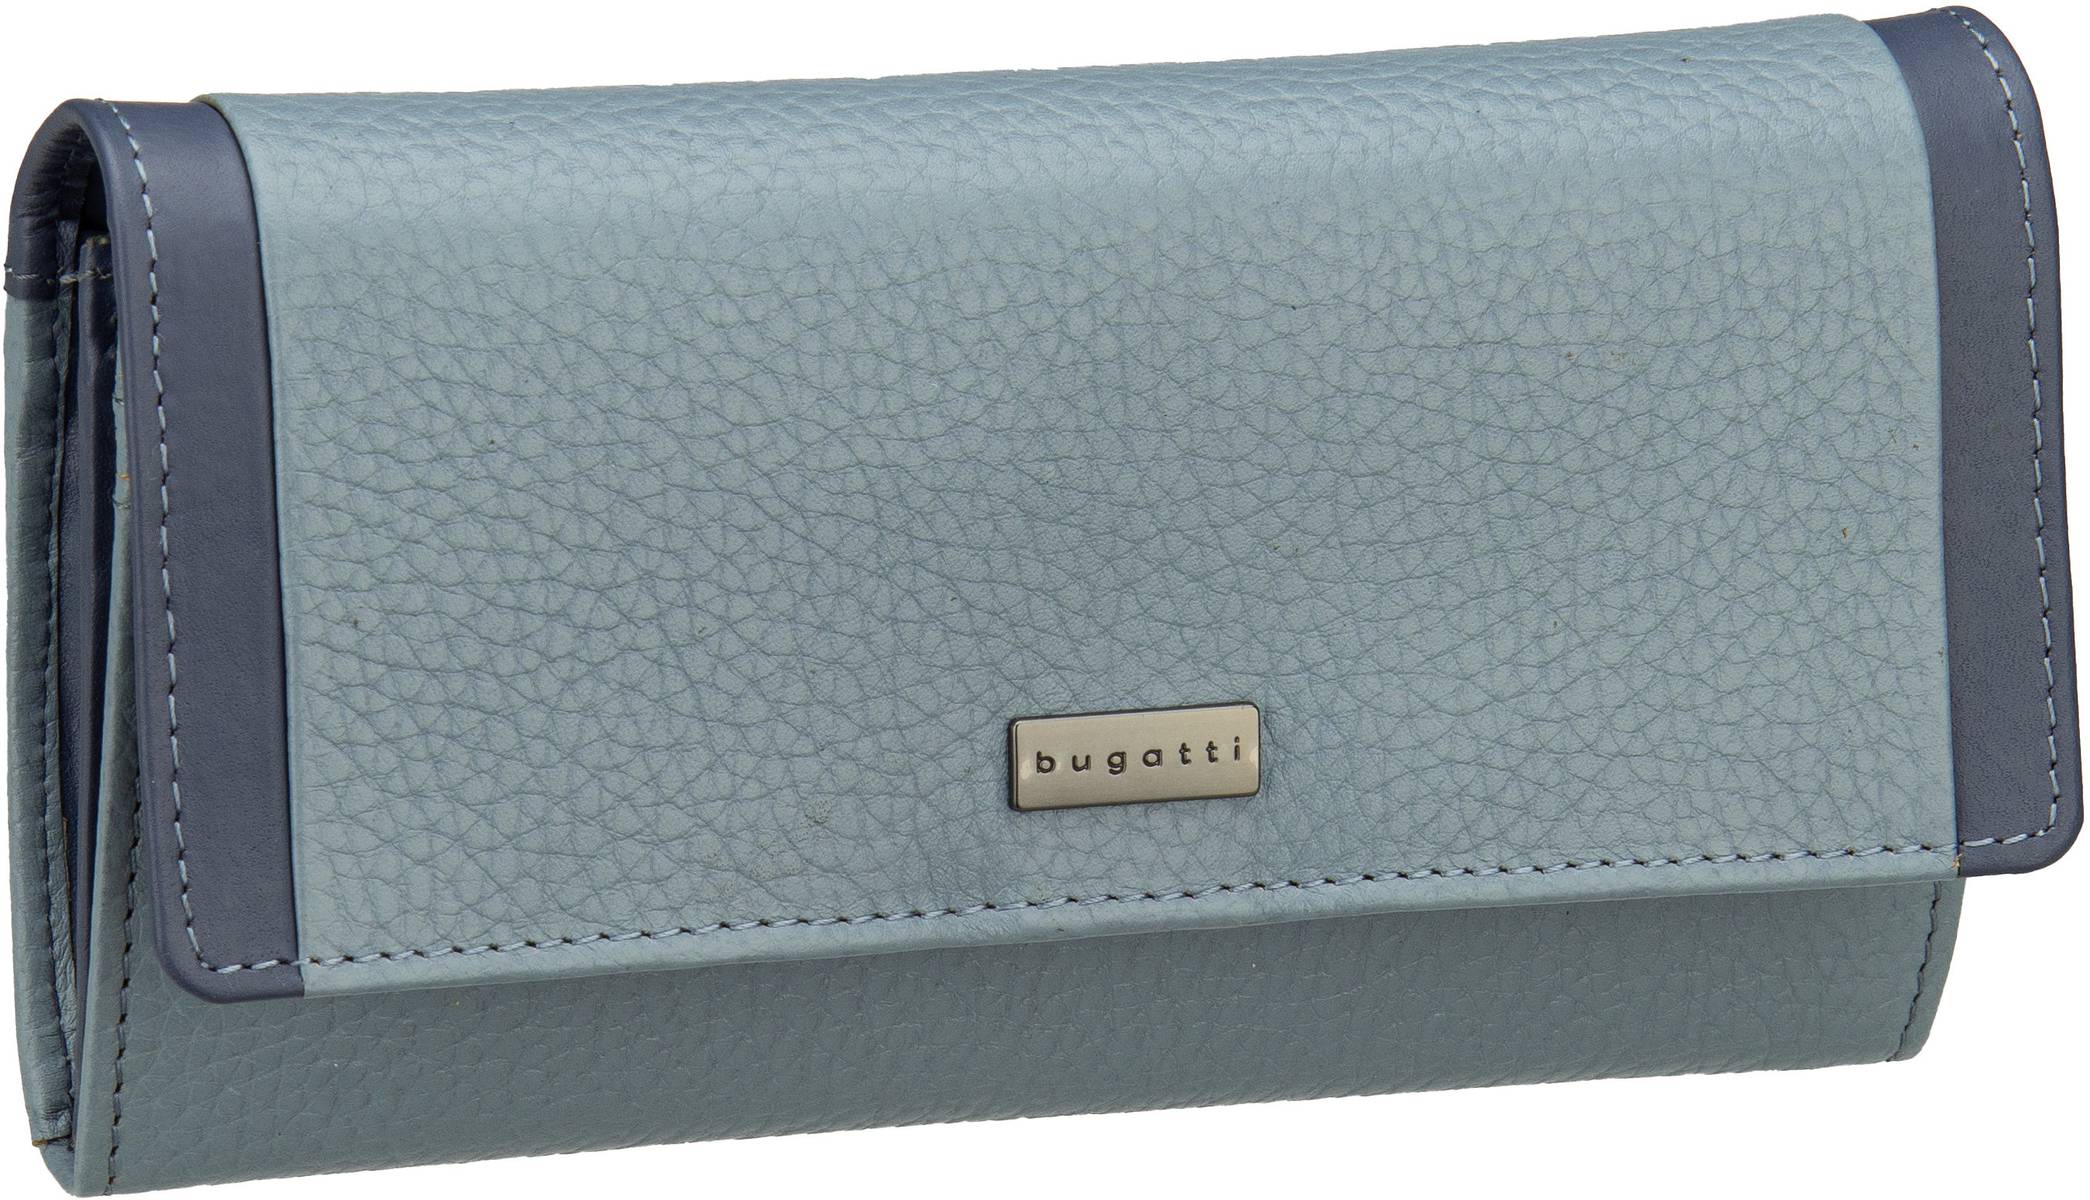 Bugatti Sina Ladies Long Wallet With Flap  in Blau (0.5 Liter), Geldbörse